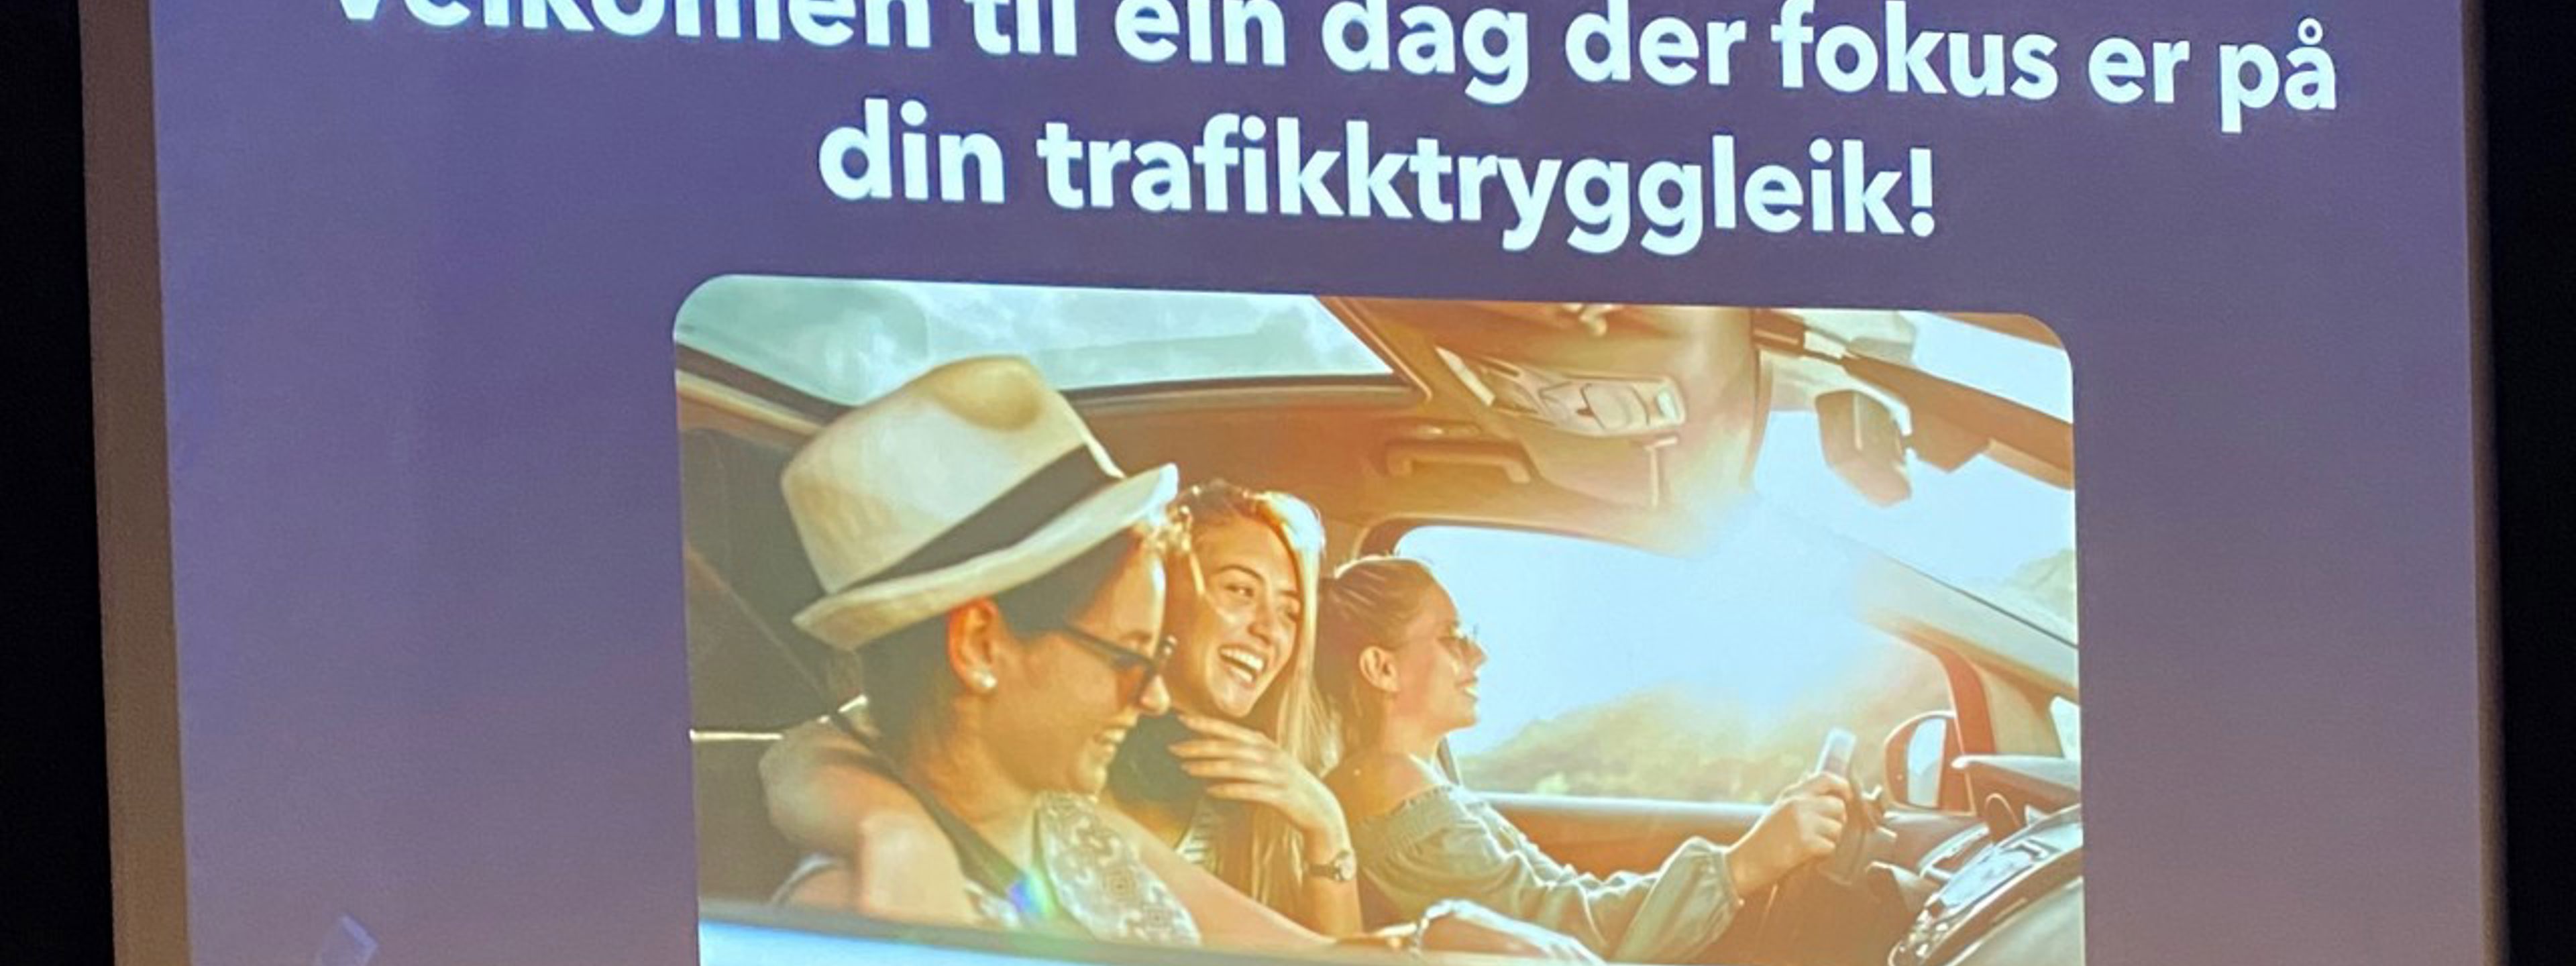 Bilde av ein powerpoint der det står "Velkomen til ein dag der fokus er på din trafikktryggleik". Under er det bilde av unge menneske i ein bil på ein solfylt dag.